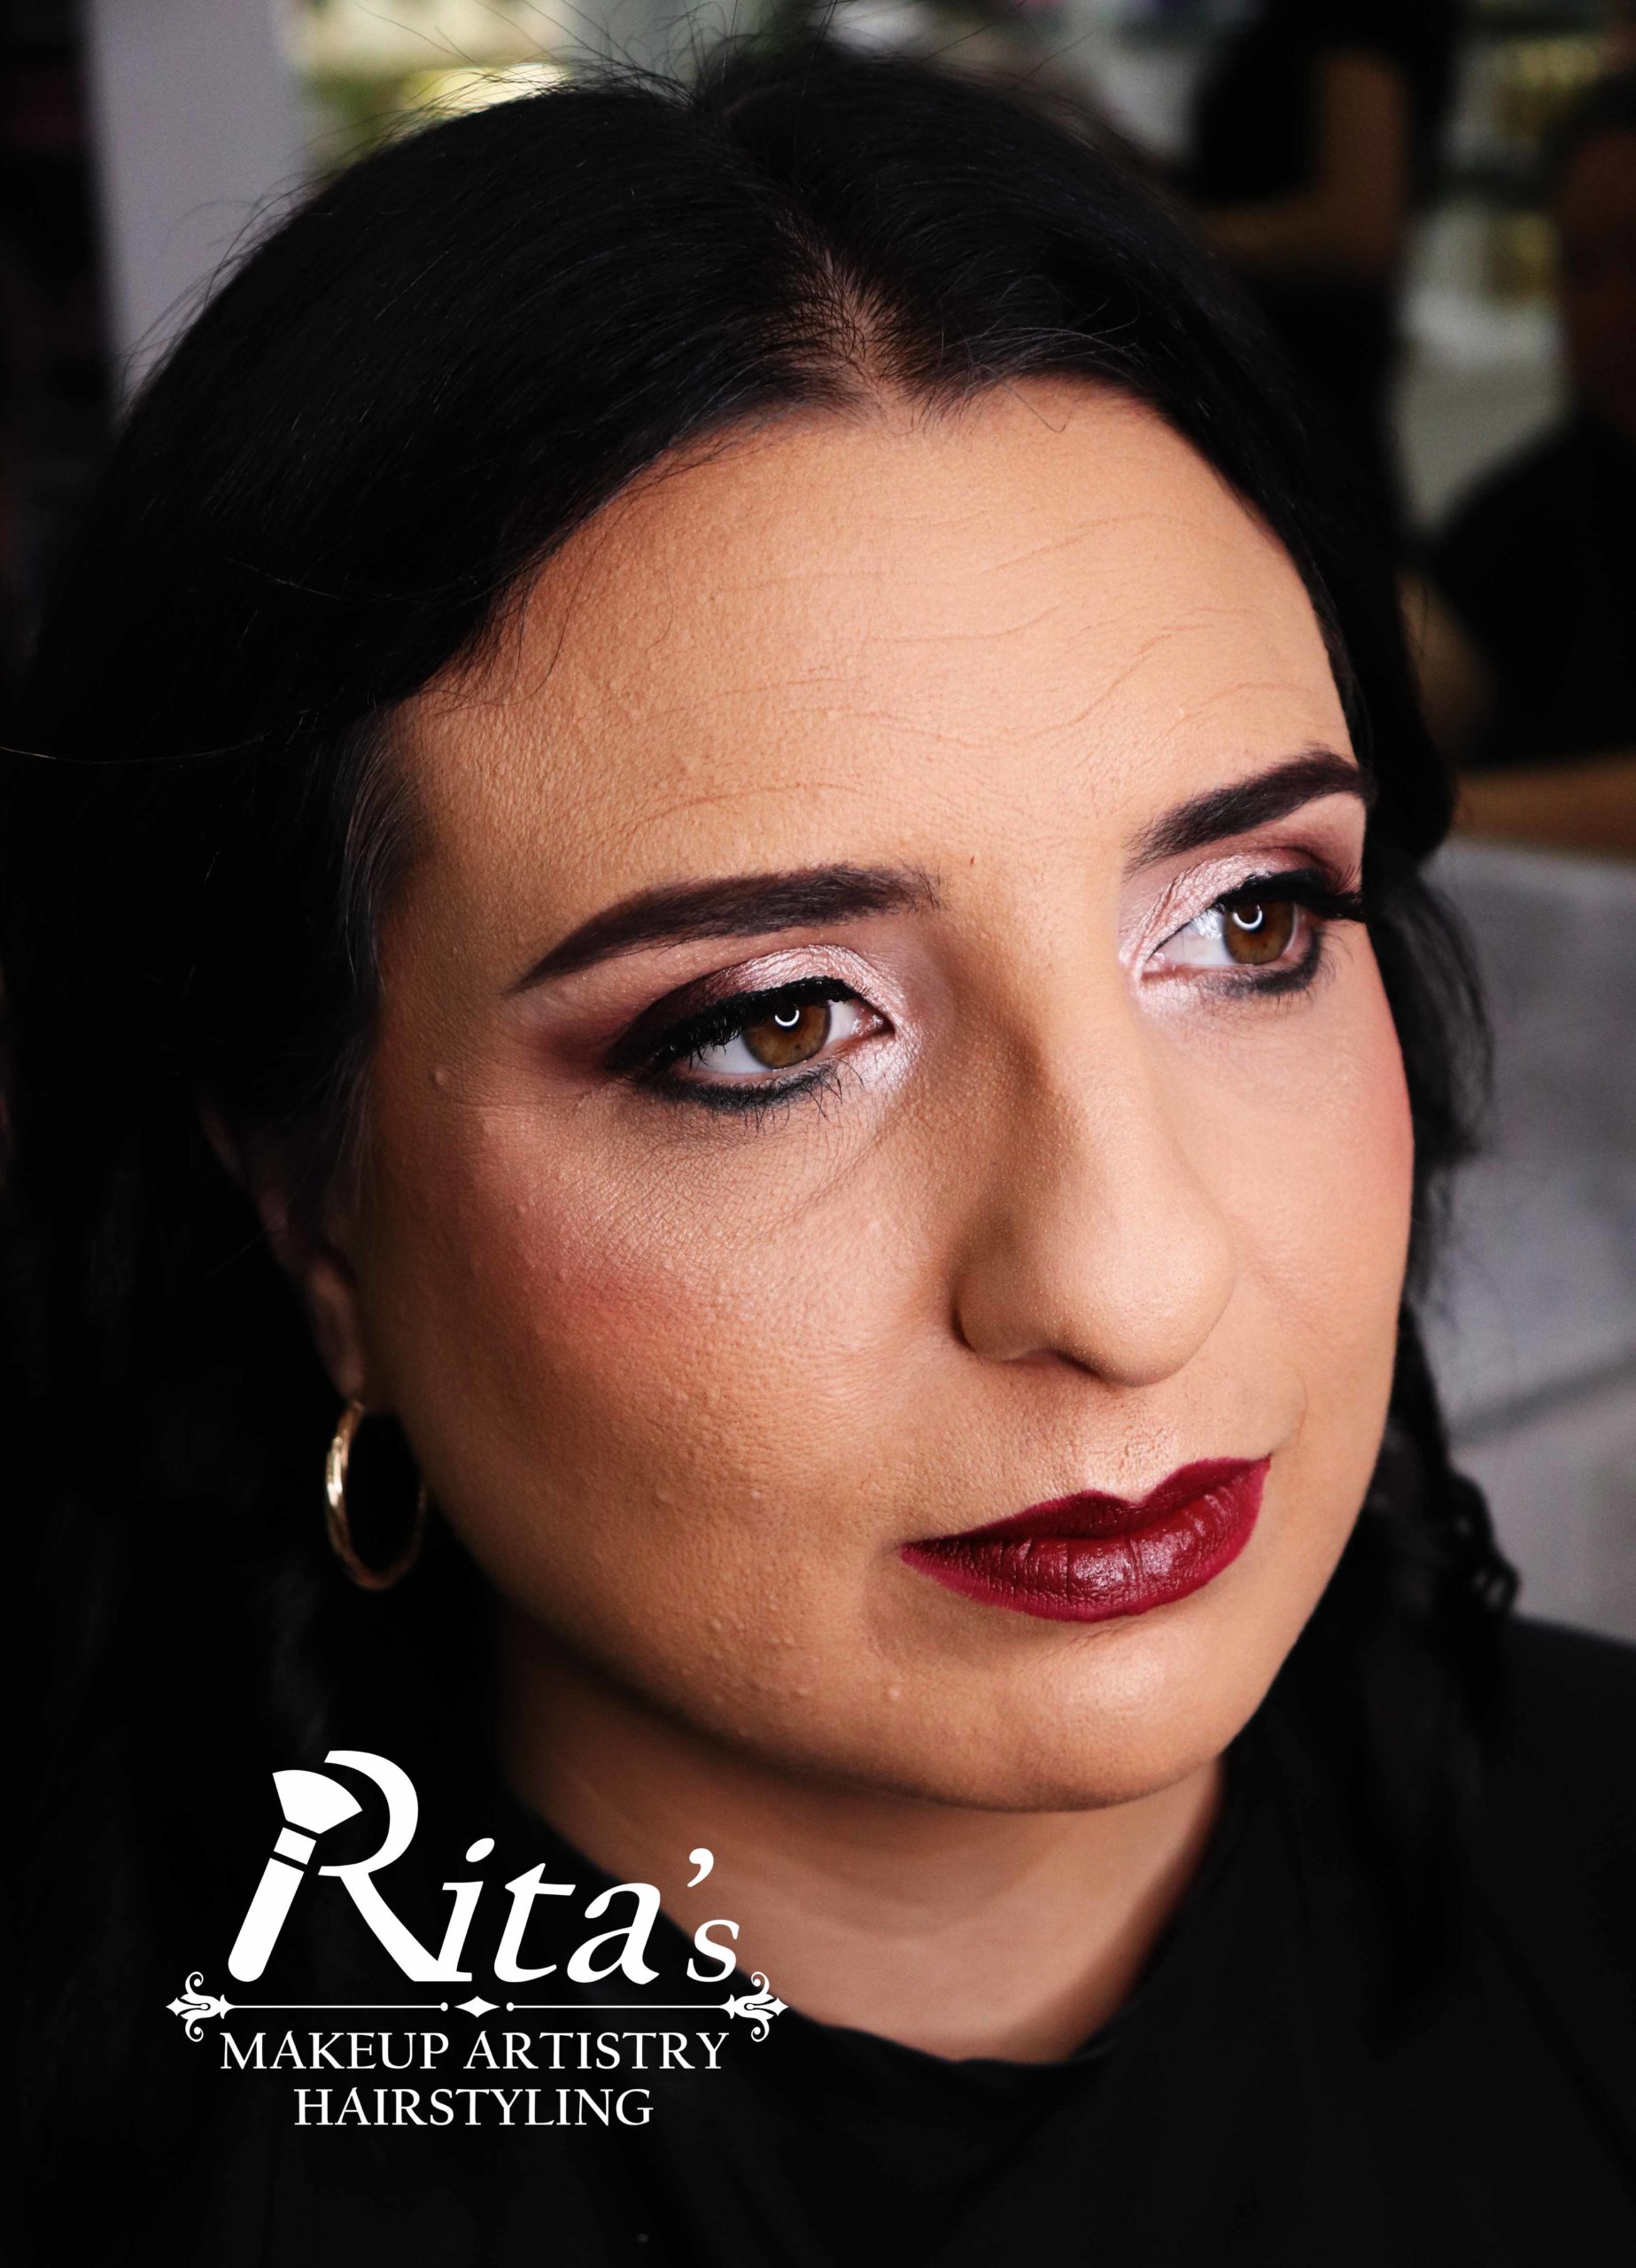 Rita's Makeup Artistry Formal